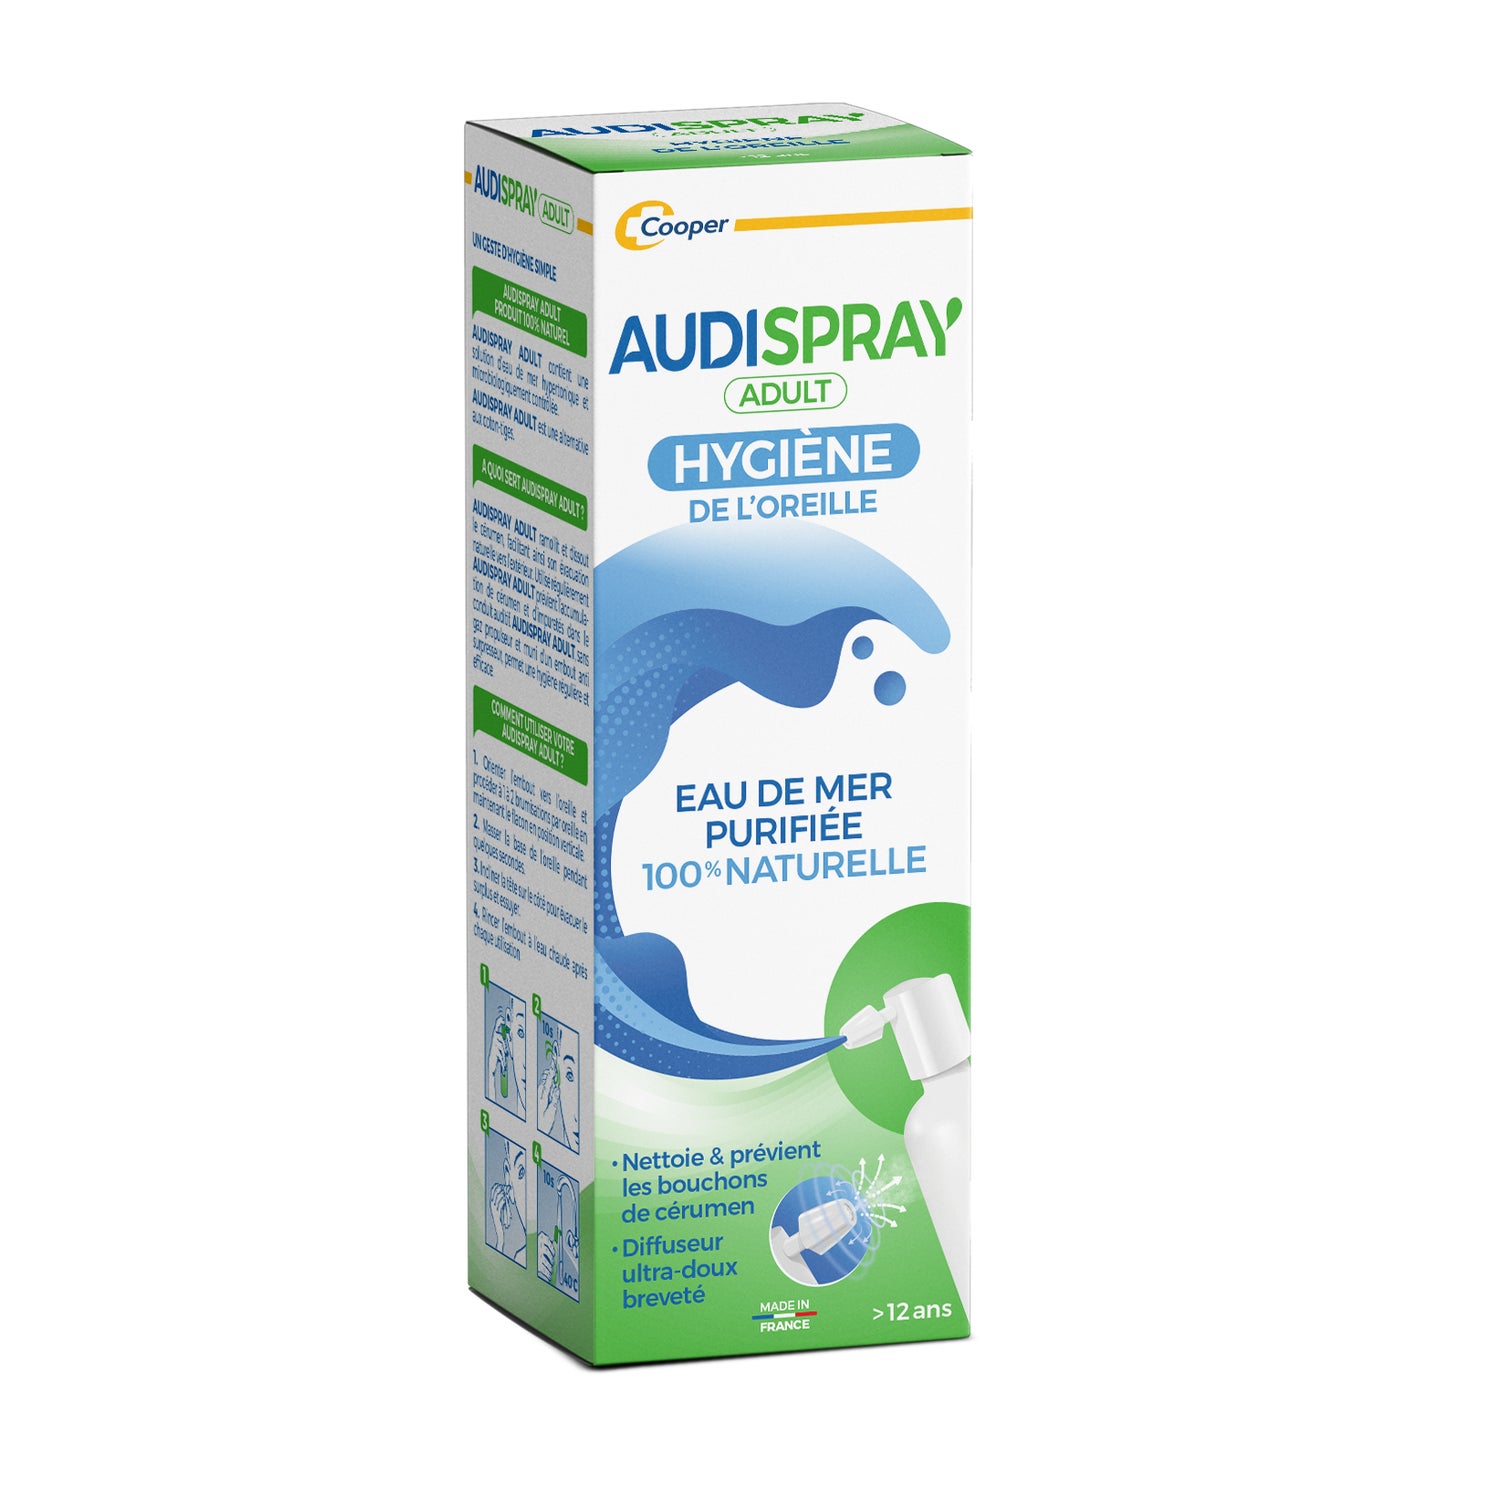 Achetez Audispray Adult Hygiène de l'Oreille 50ml moins cher